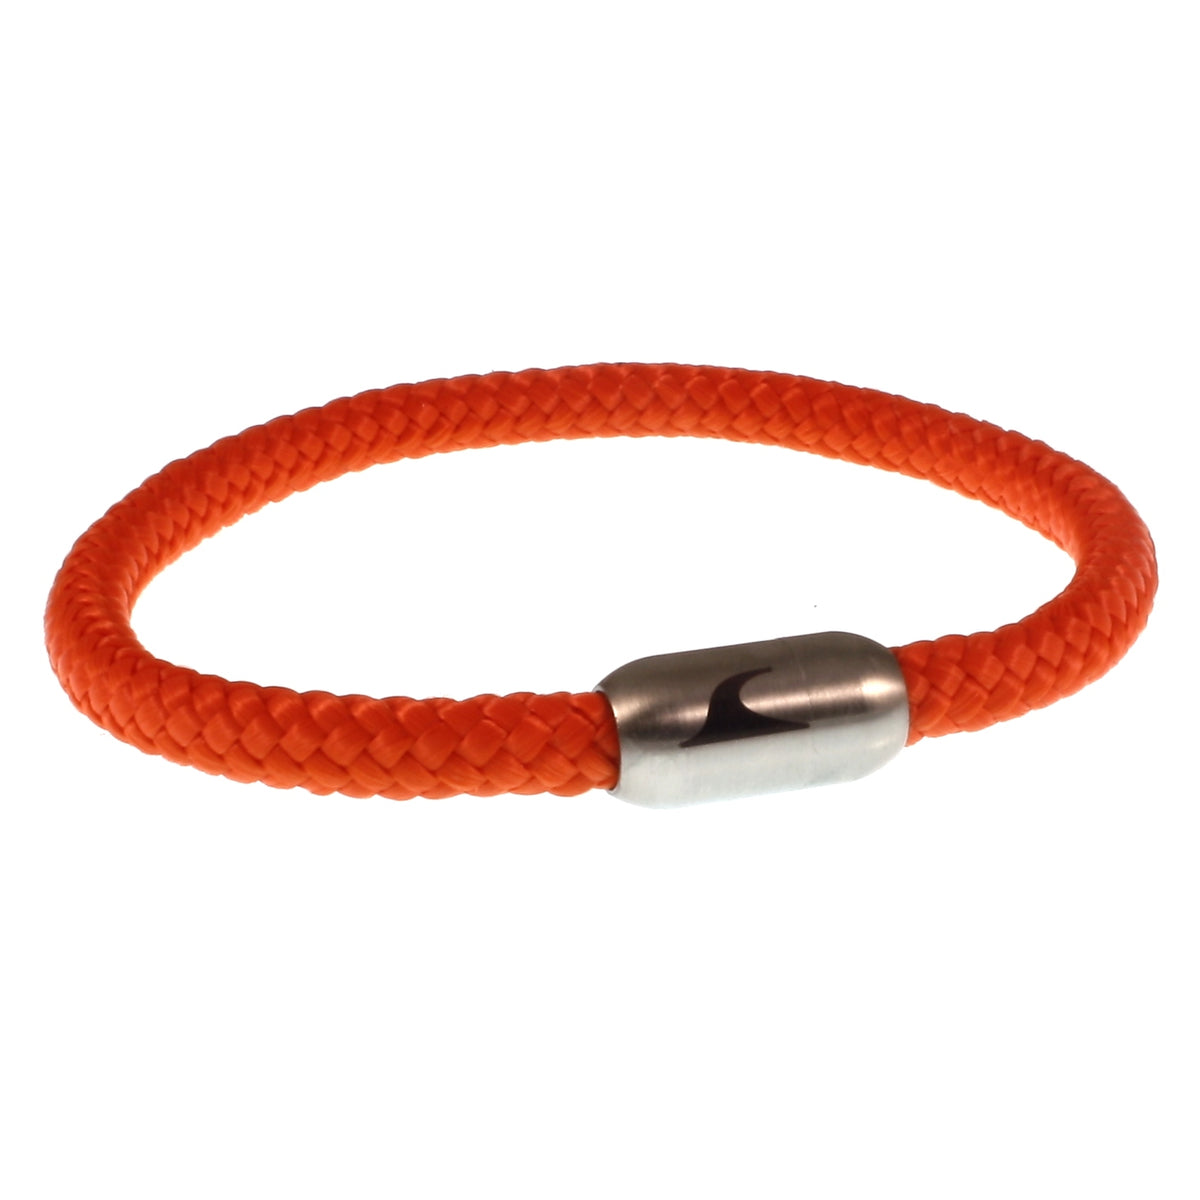 Herren-segeltau-armband-damen-sylt-orange-silber-geflochten-Edelstahlverschluss-vorn-wavepirate-shop-st